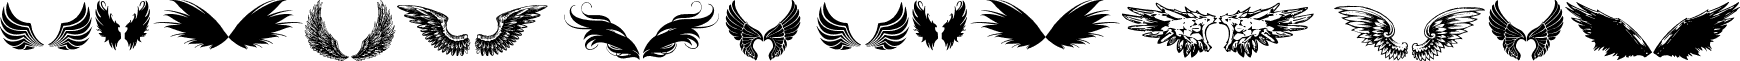 wings of wind tfb font - wings of wind tfb.ttf